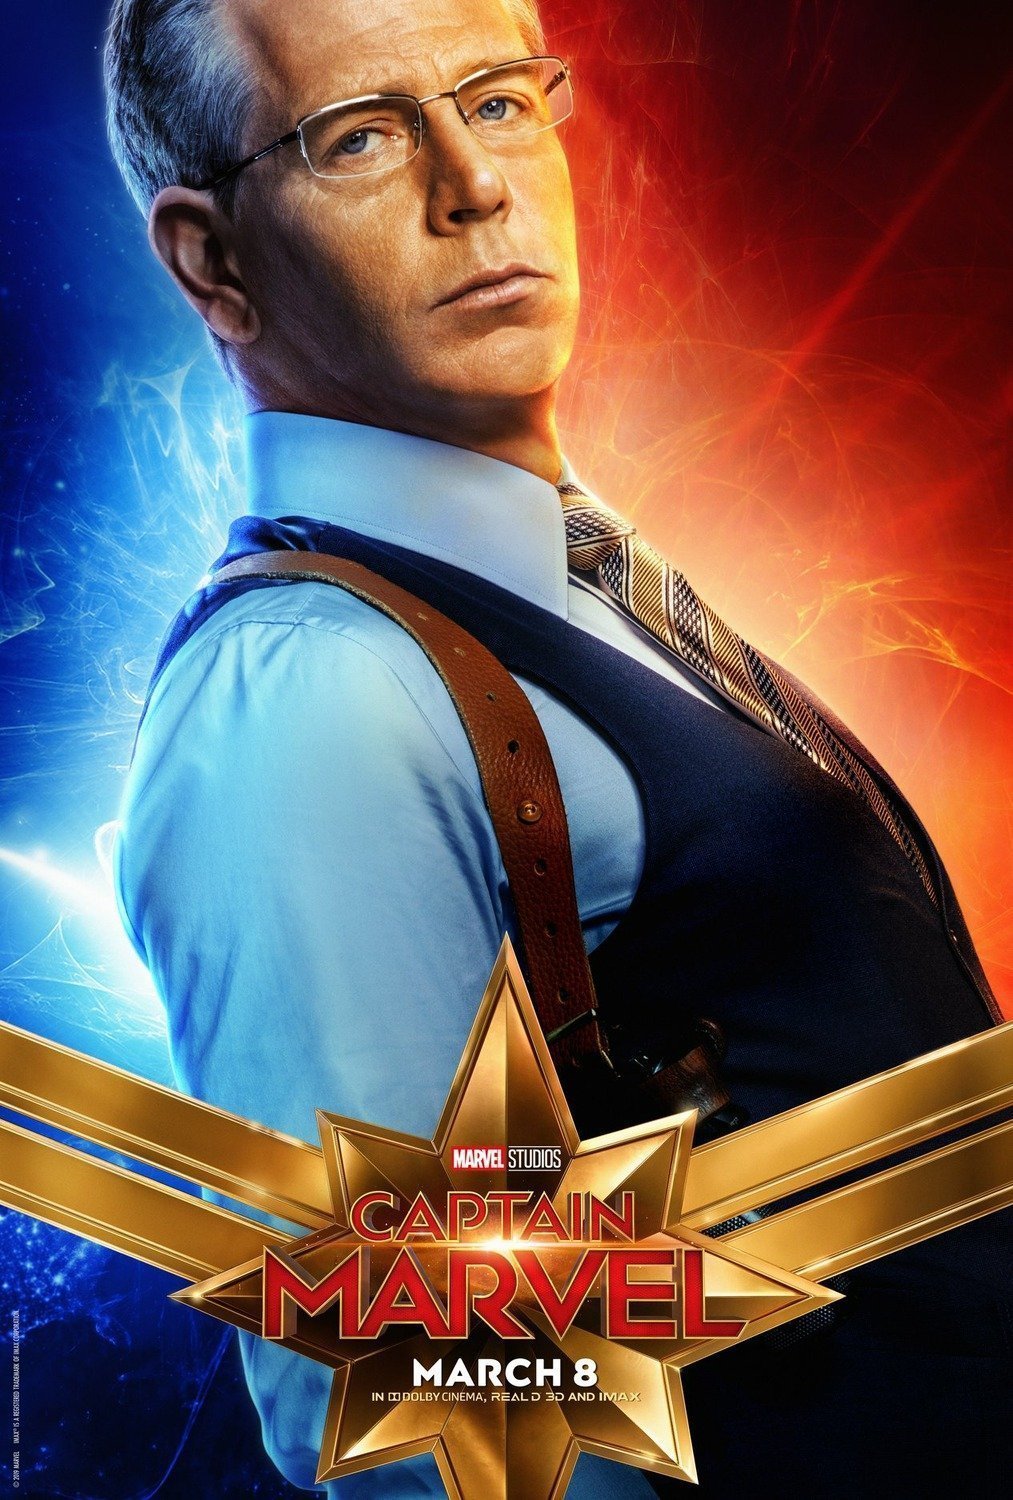 Poster du film Captain Marvel avec Ben Mendelsohn (Talos)